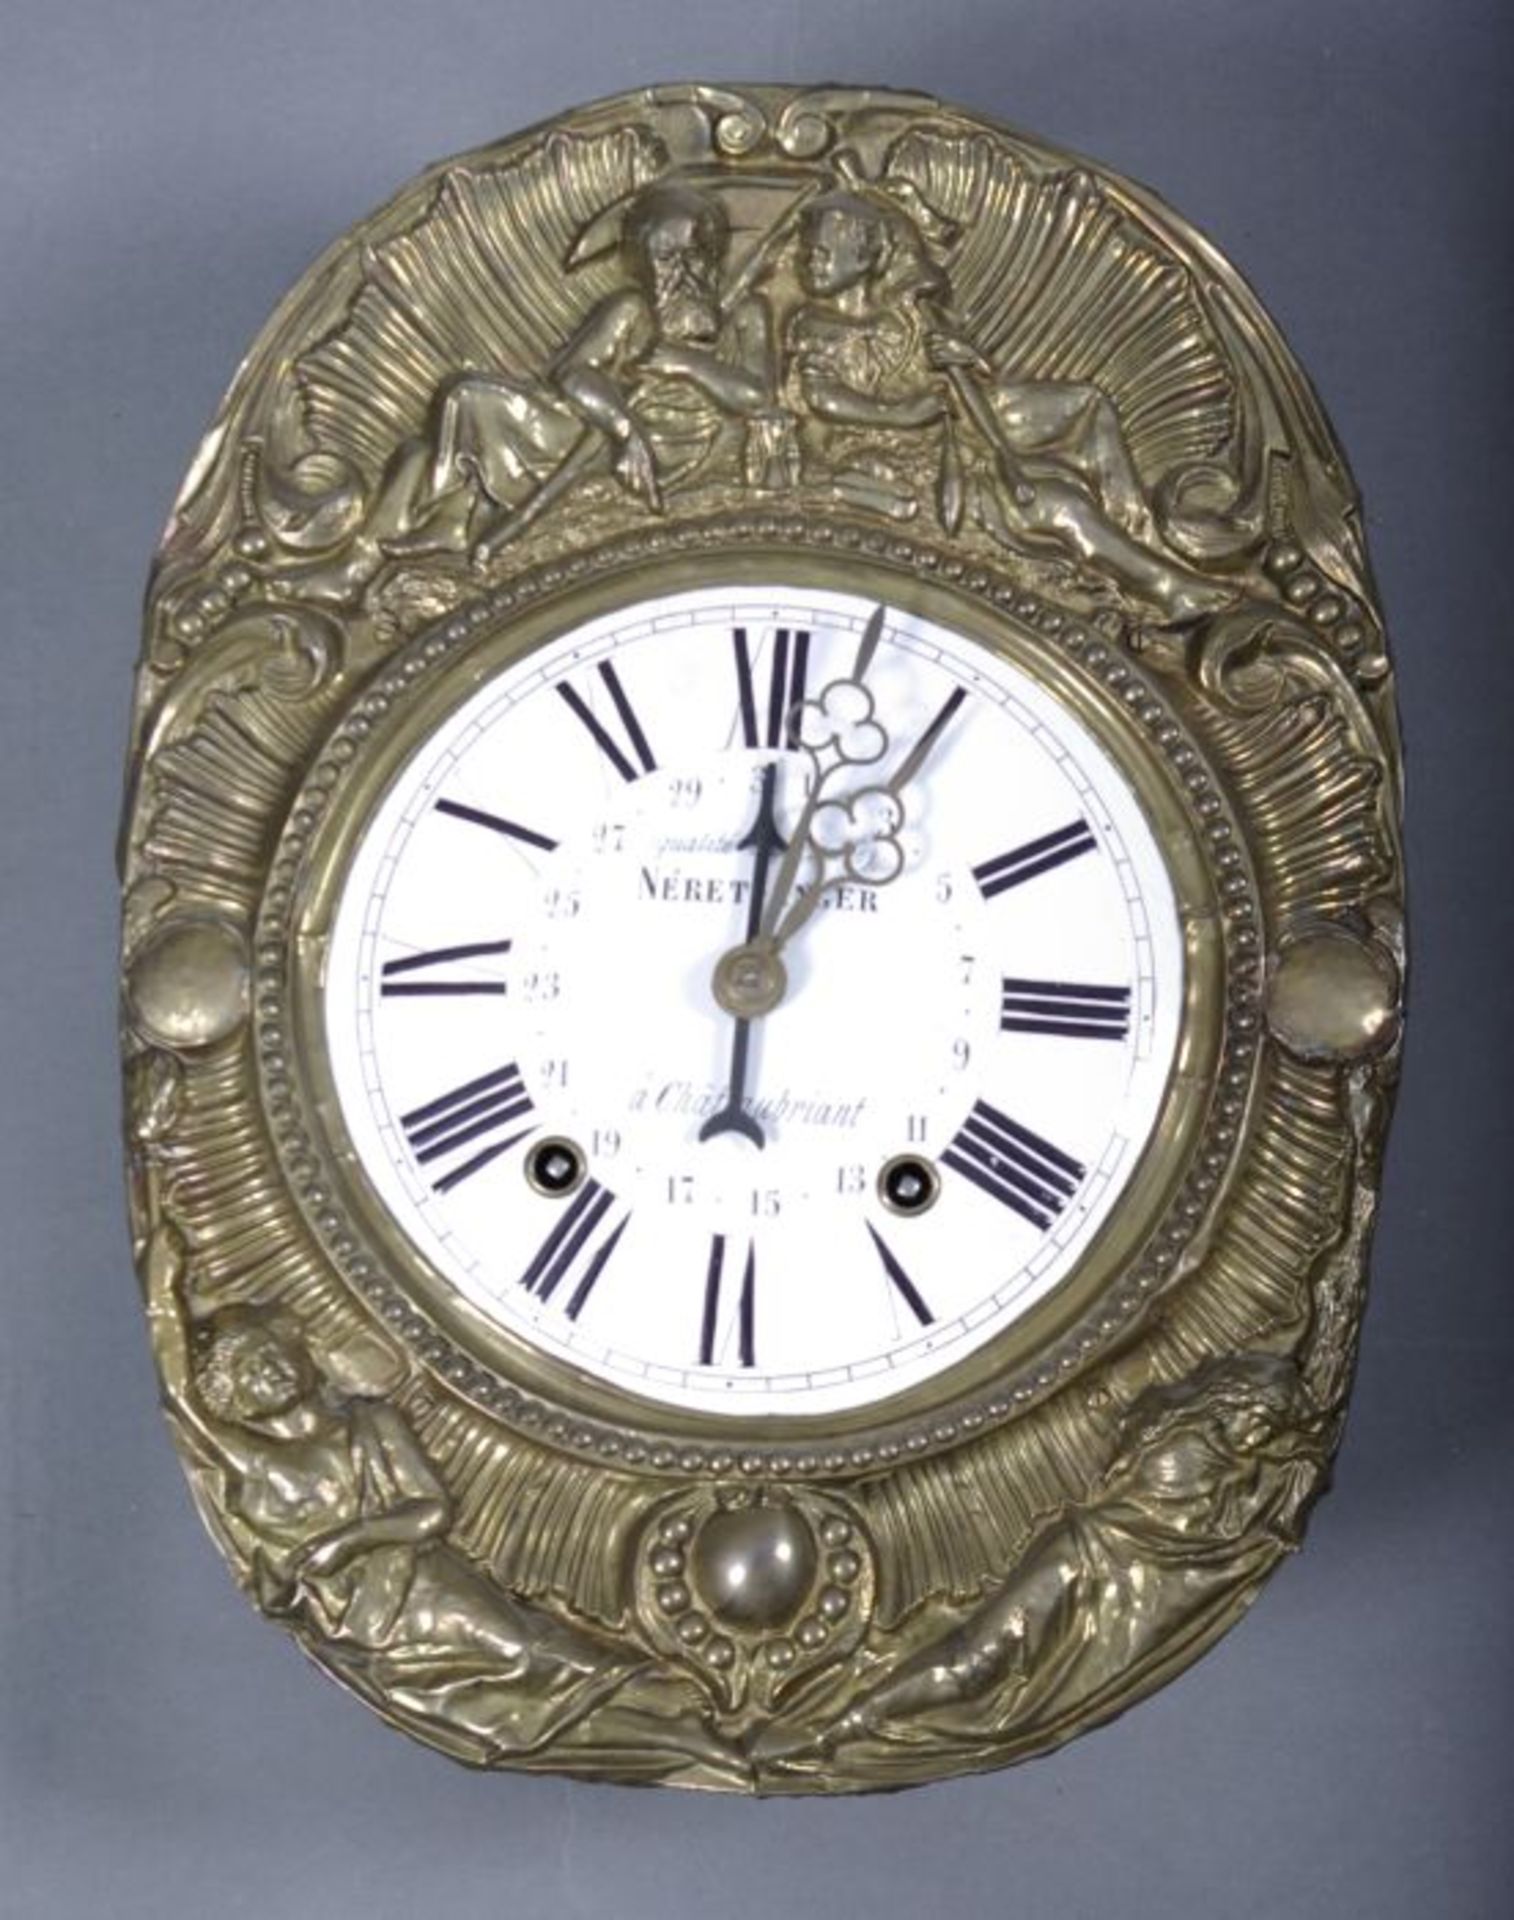 Comtoise-UhrFrankreich, 19.Jh., rechteckiges Uhrengehäuse, ovales Schild m. reliefplastischem